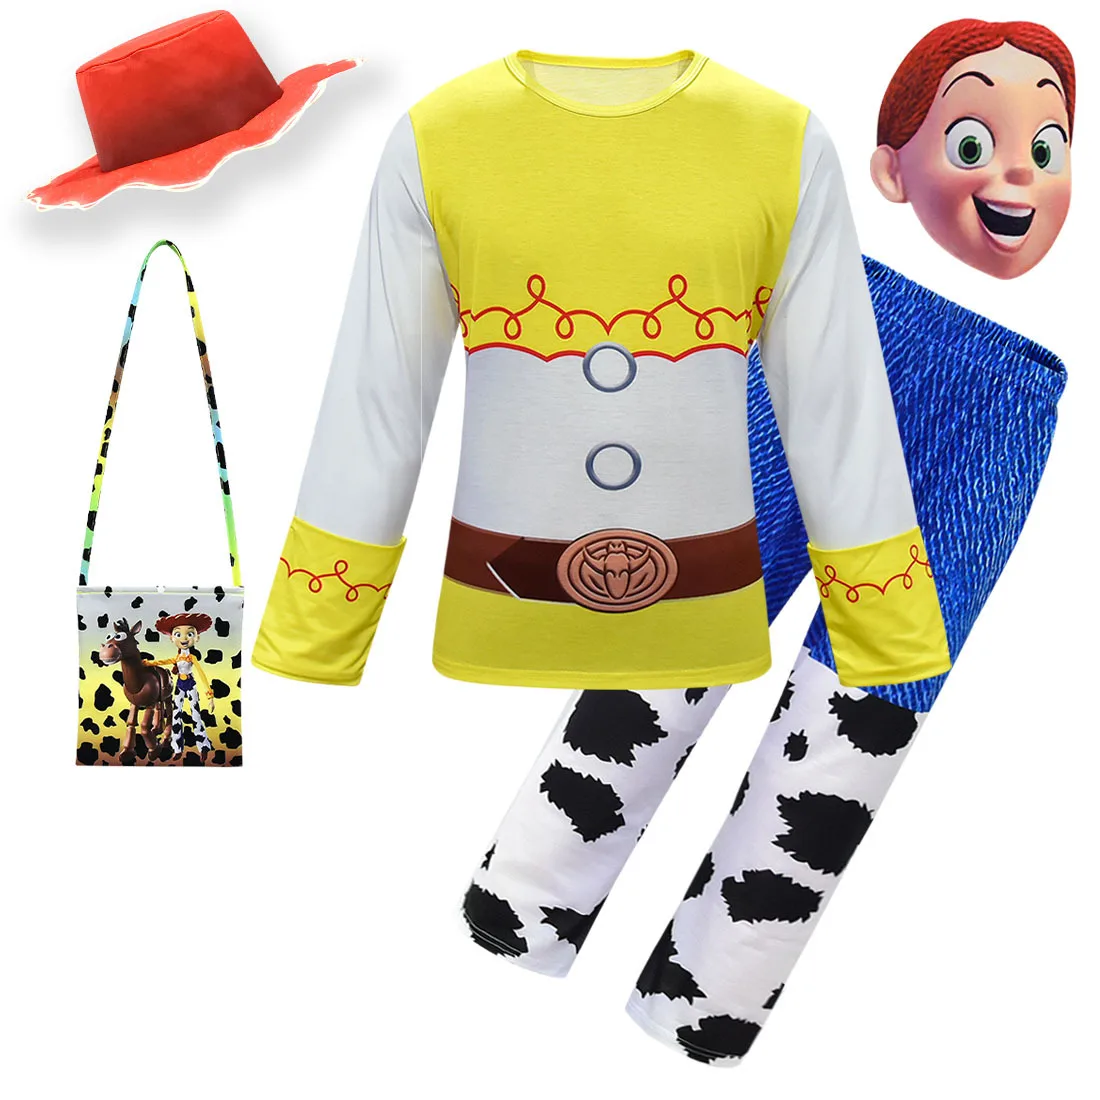 Для девочек «История игрушек», «4 карнавальный костюм Комплекты одежды из мультфильма Джесси Детский костюм на Хеллоуин Костюмы для косплея нарядное Костюмы наряд для малышей